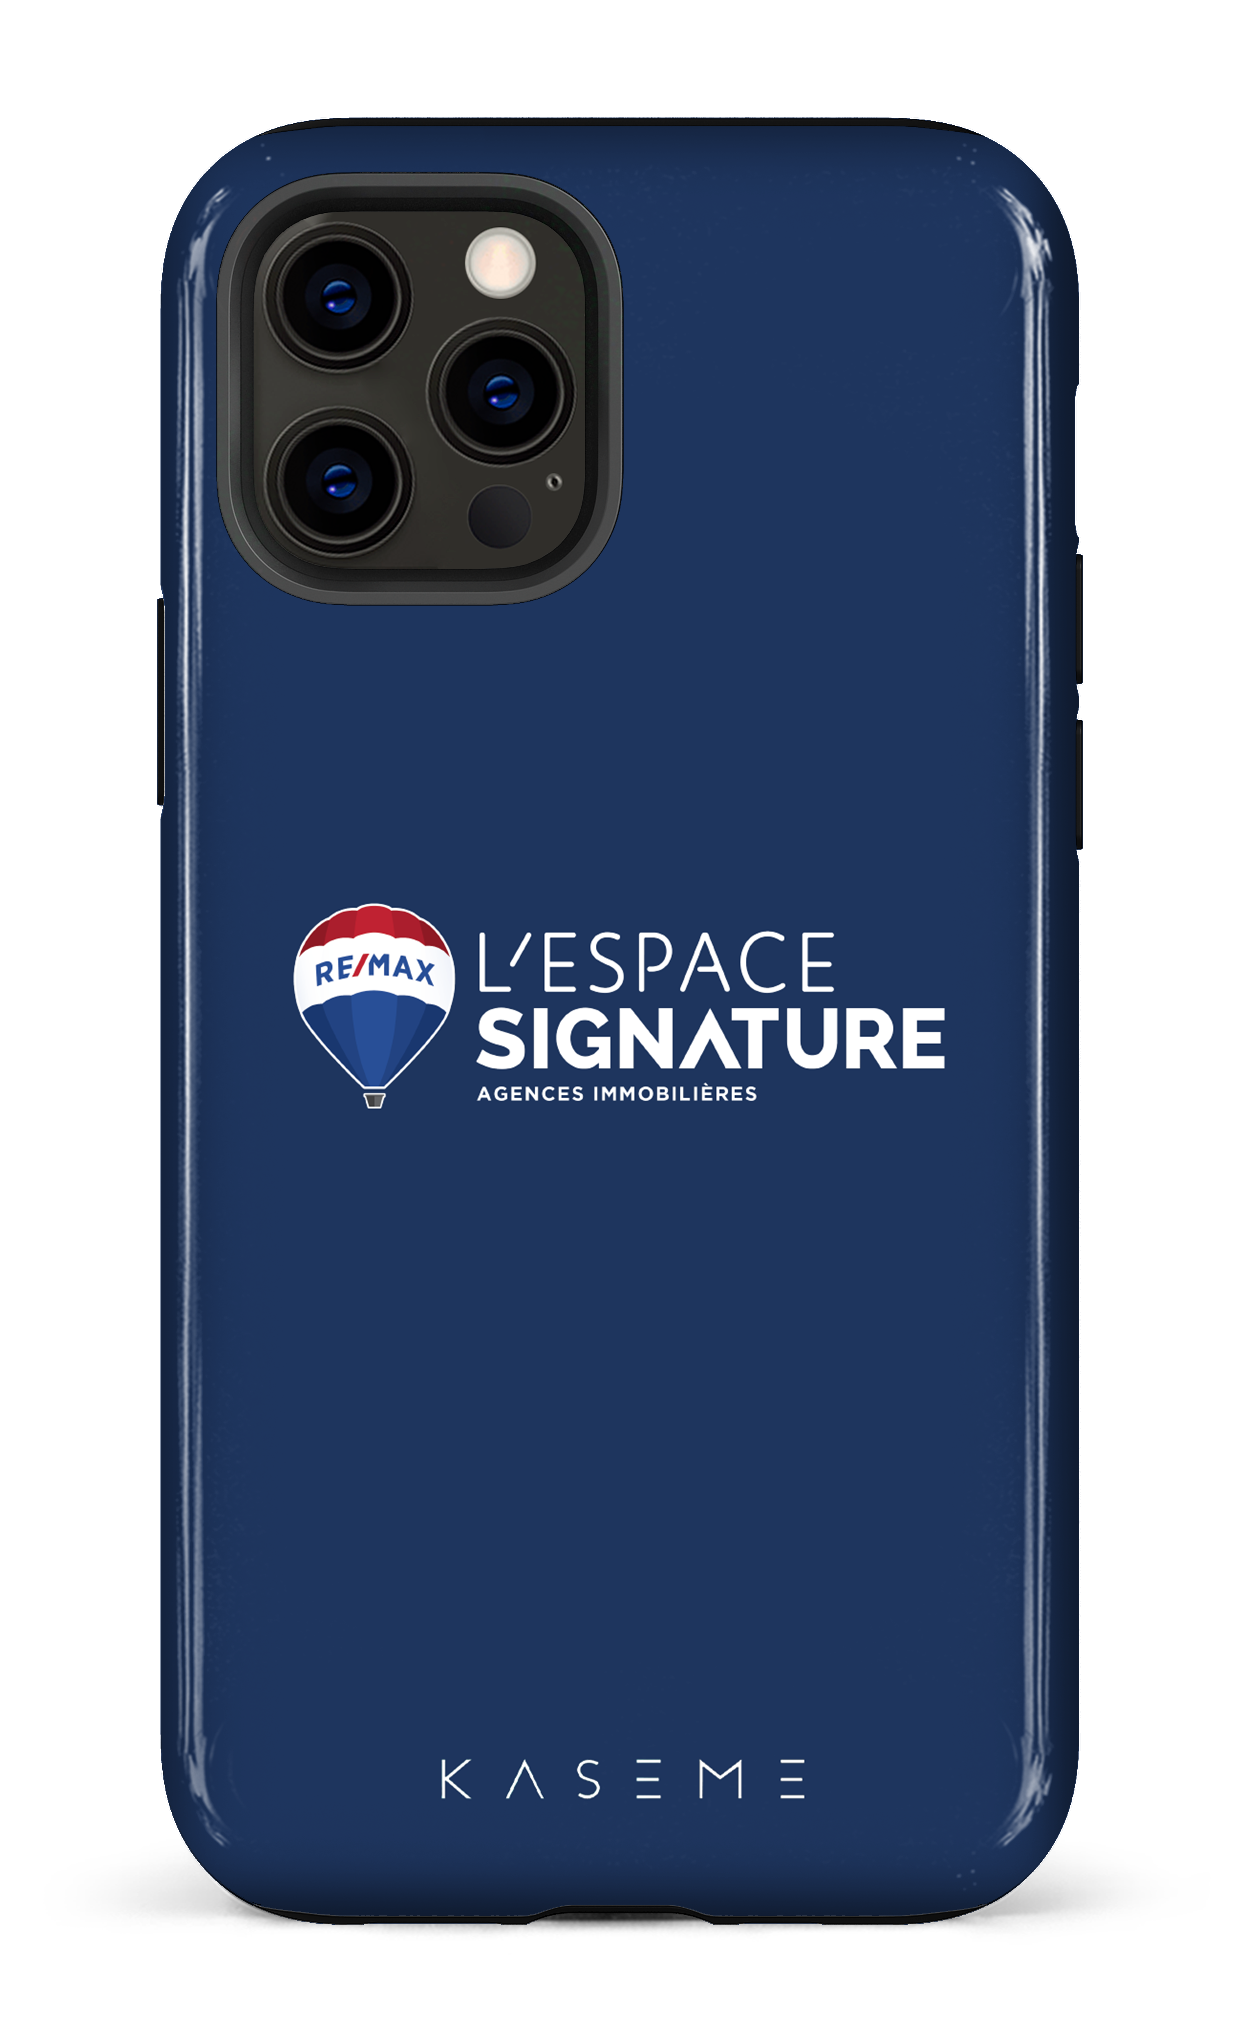 Remax Signature L'espace Bleu - iPhone 12 Pro